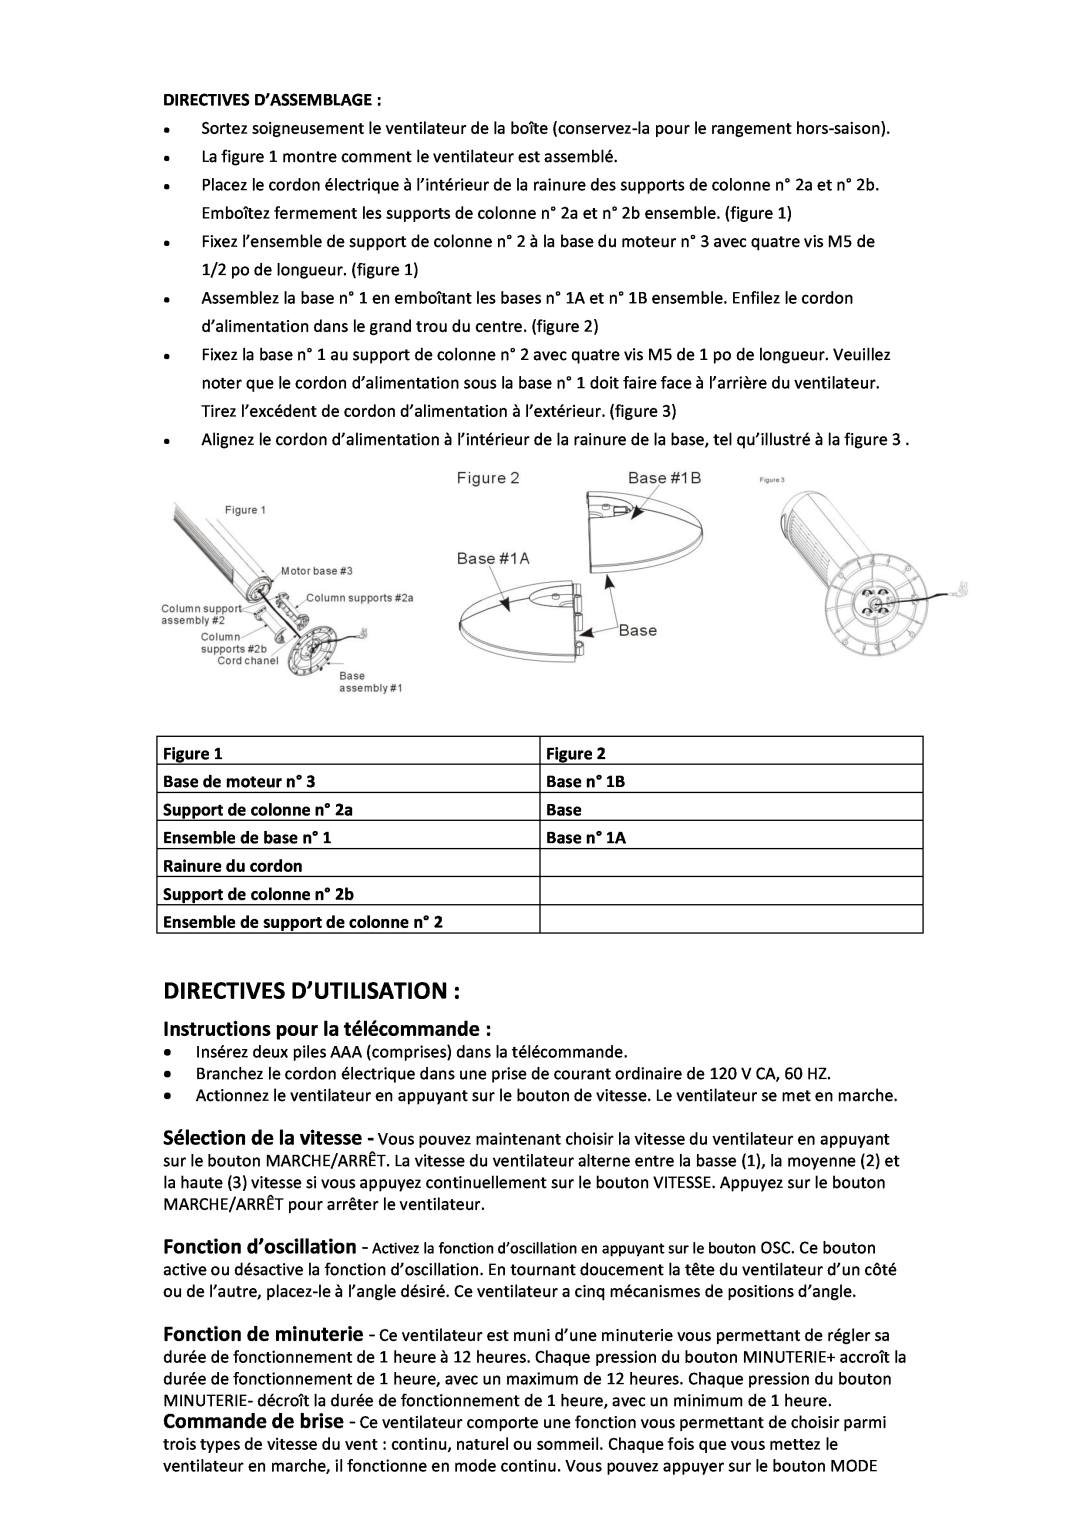 Black & Decker BDTF4200R instruction manual Instructions pour la télécommande, Directives D’Utilisation 